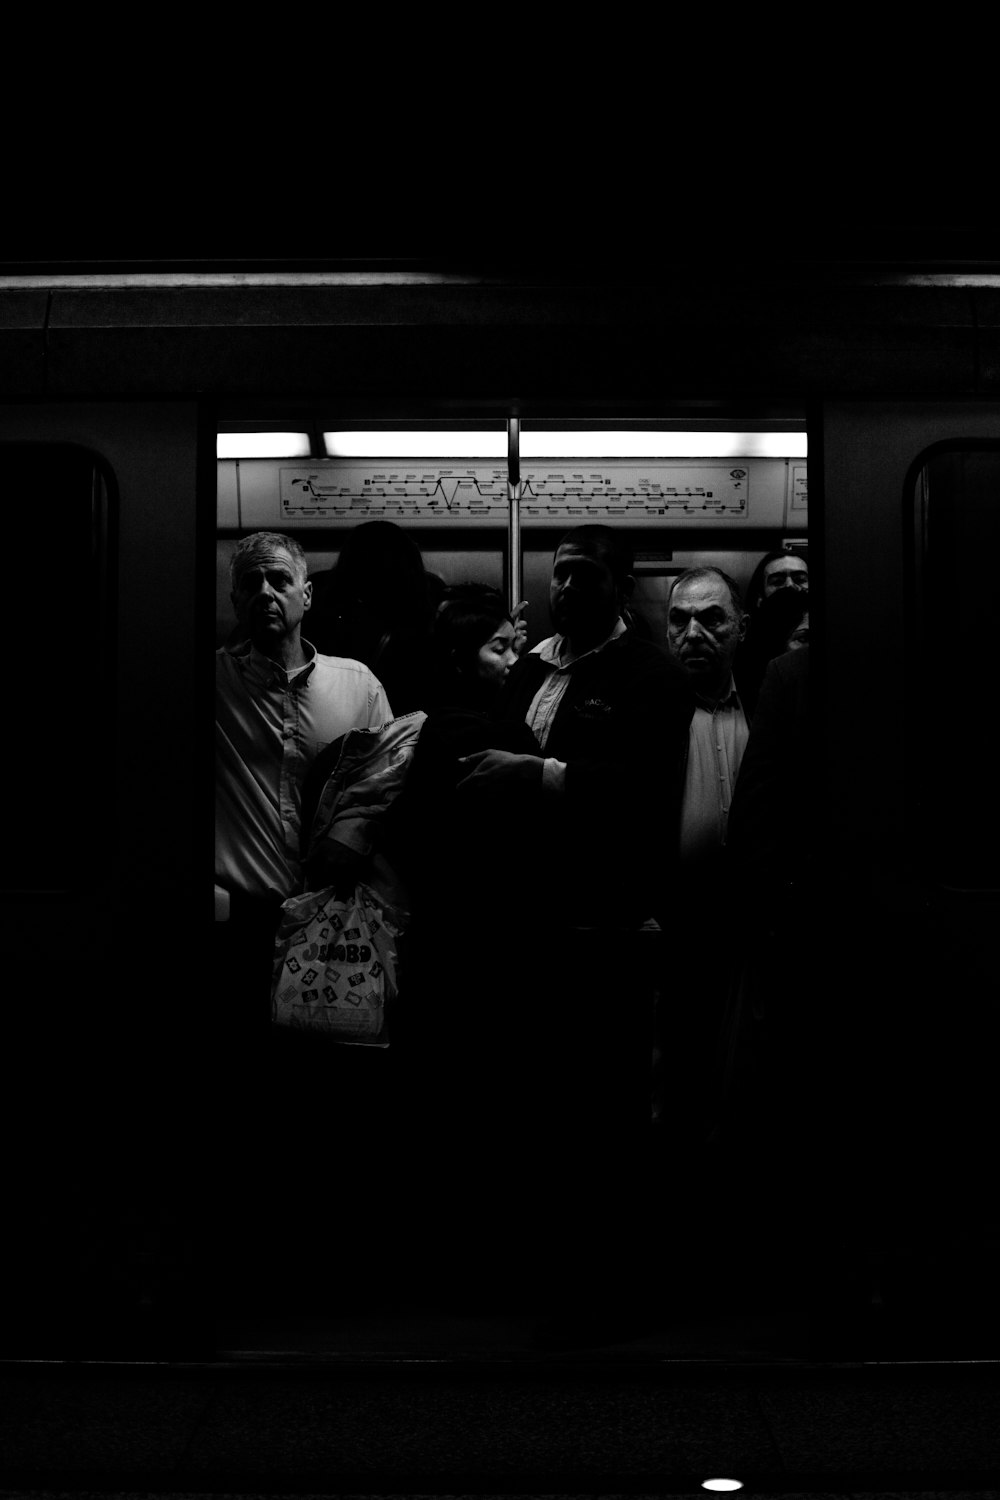 Personas dentro del tren